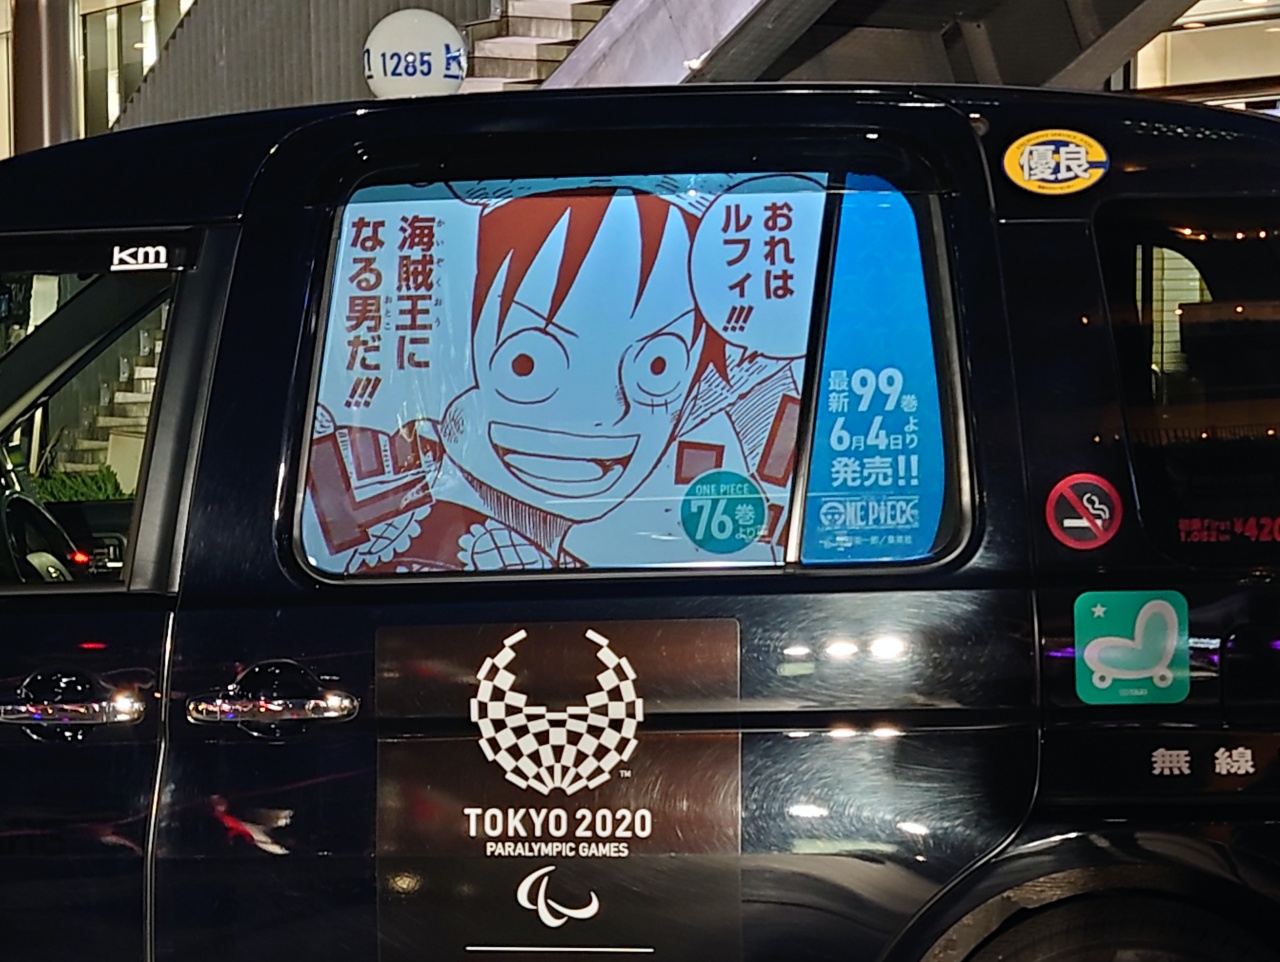 タクシー窓に広告投影 プロジェクターで Canvas始動 Engadget 日本版